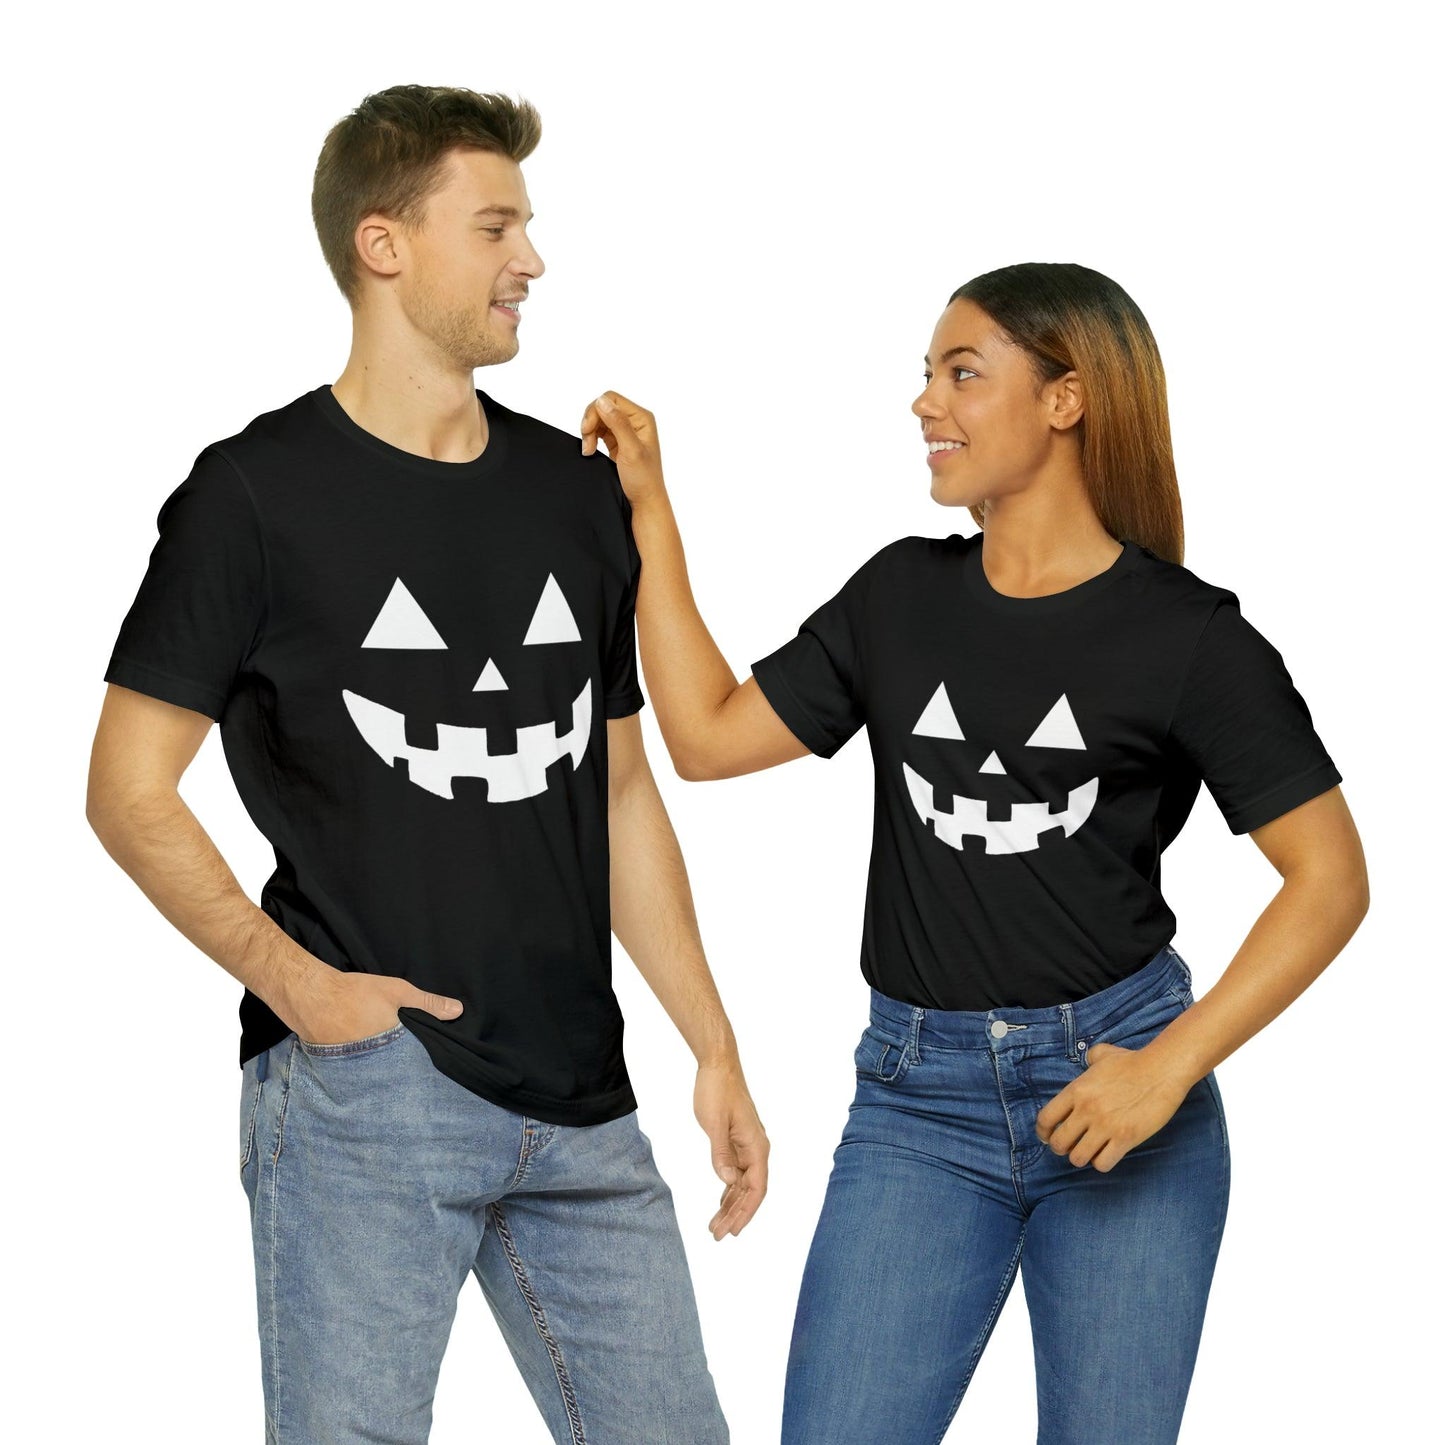 Pumpkin Silhouette Halloween Pumpkin Faces Shirt Scary Faces, Vintage Shirt Halloween Shirt Pumpkin Face Halloween Costume